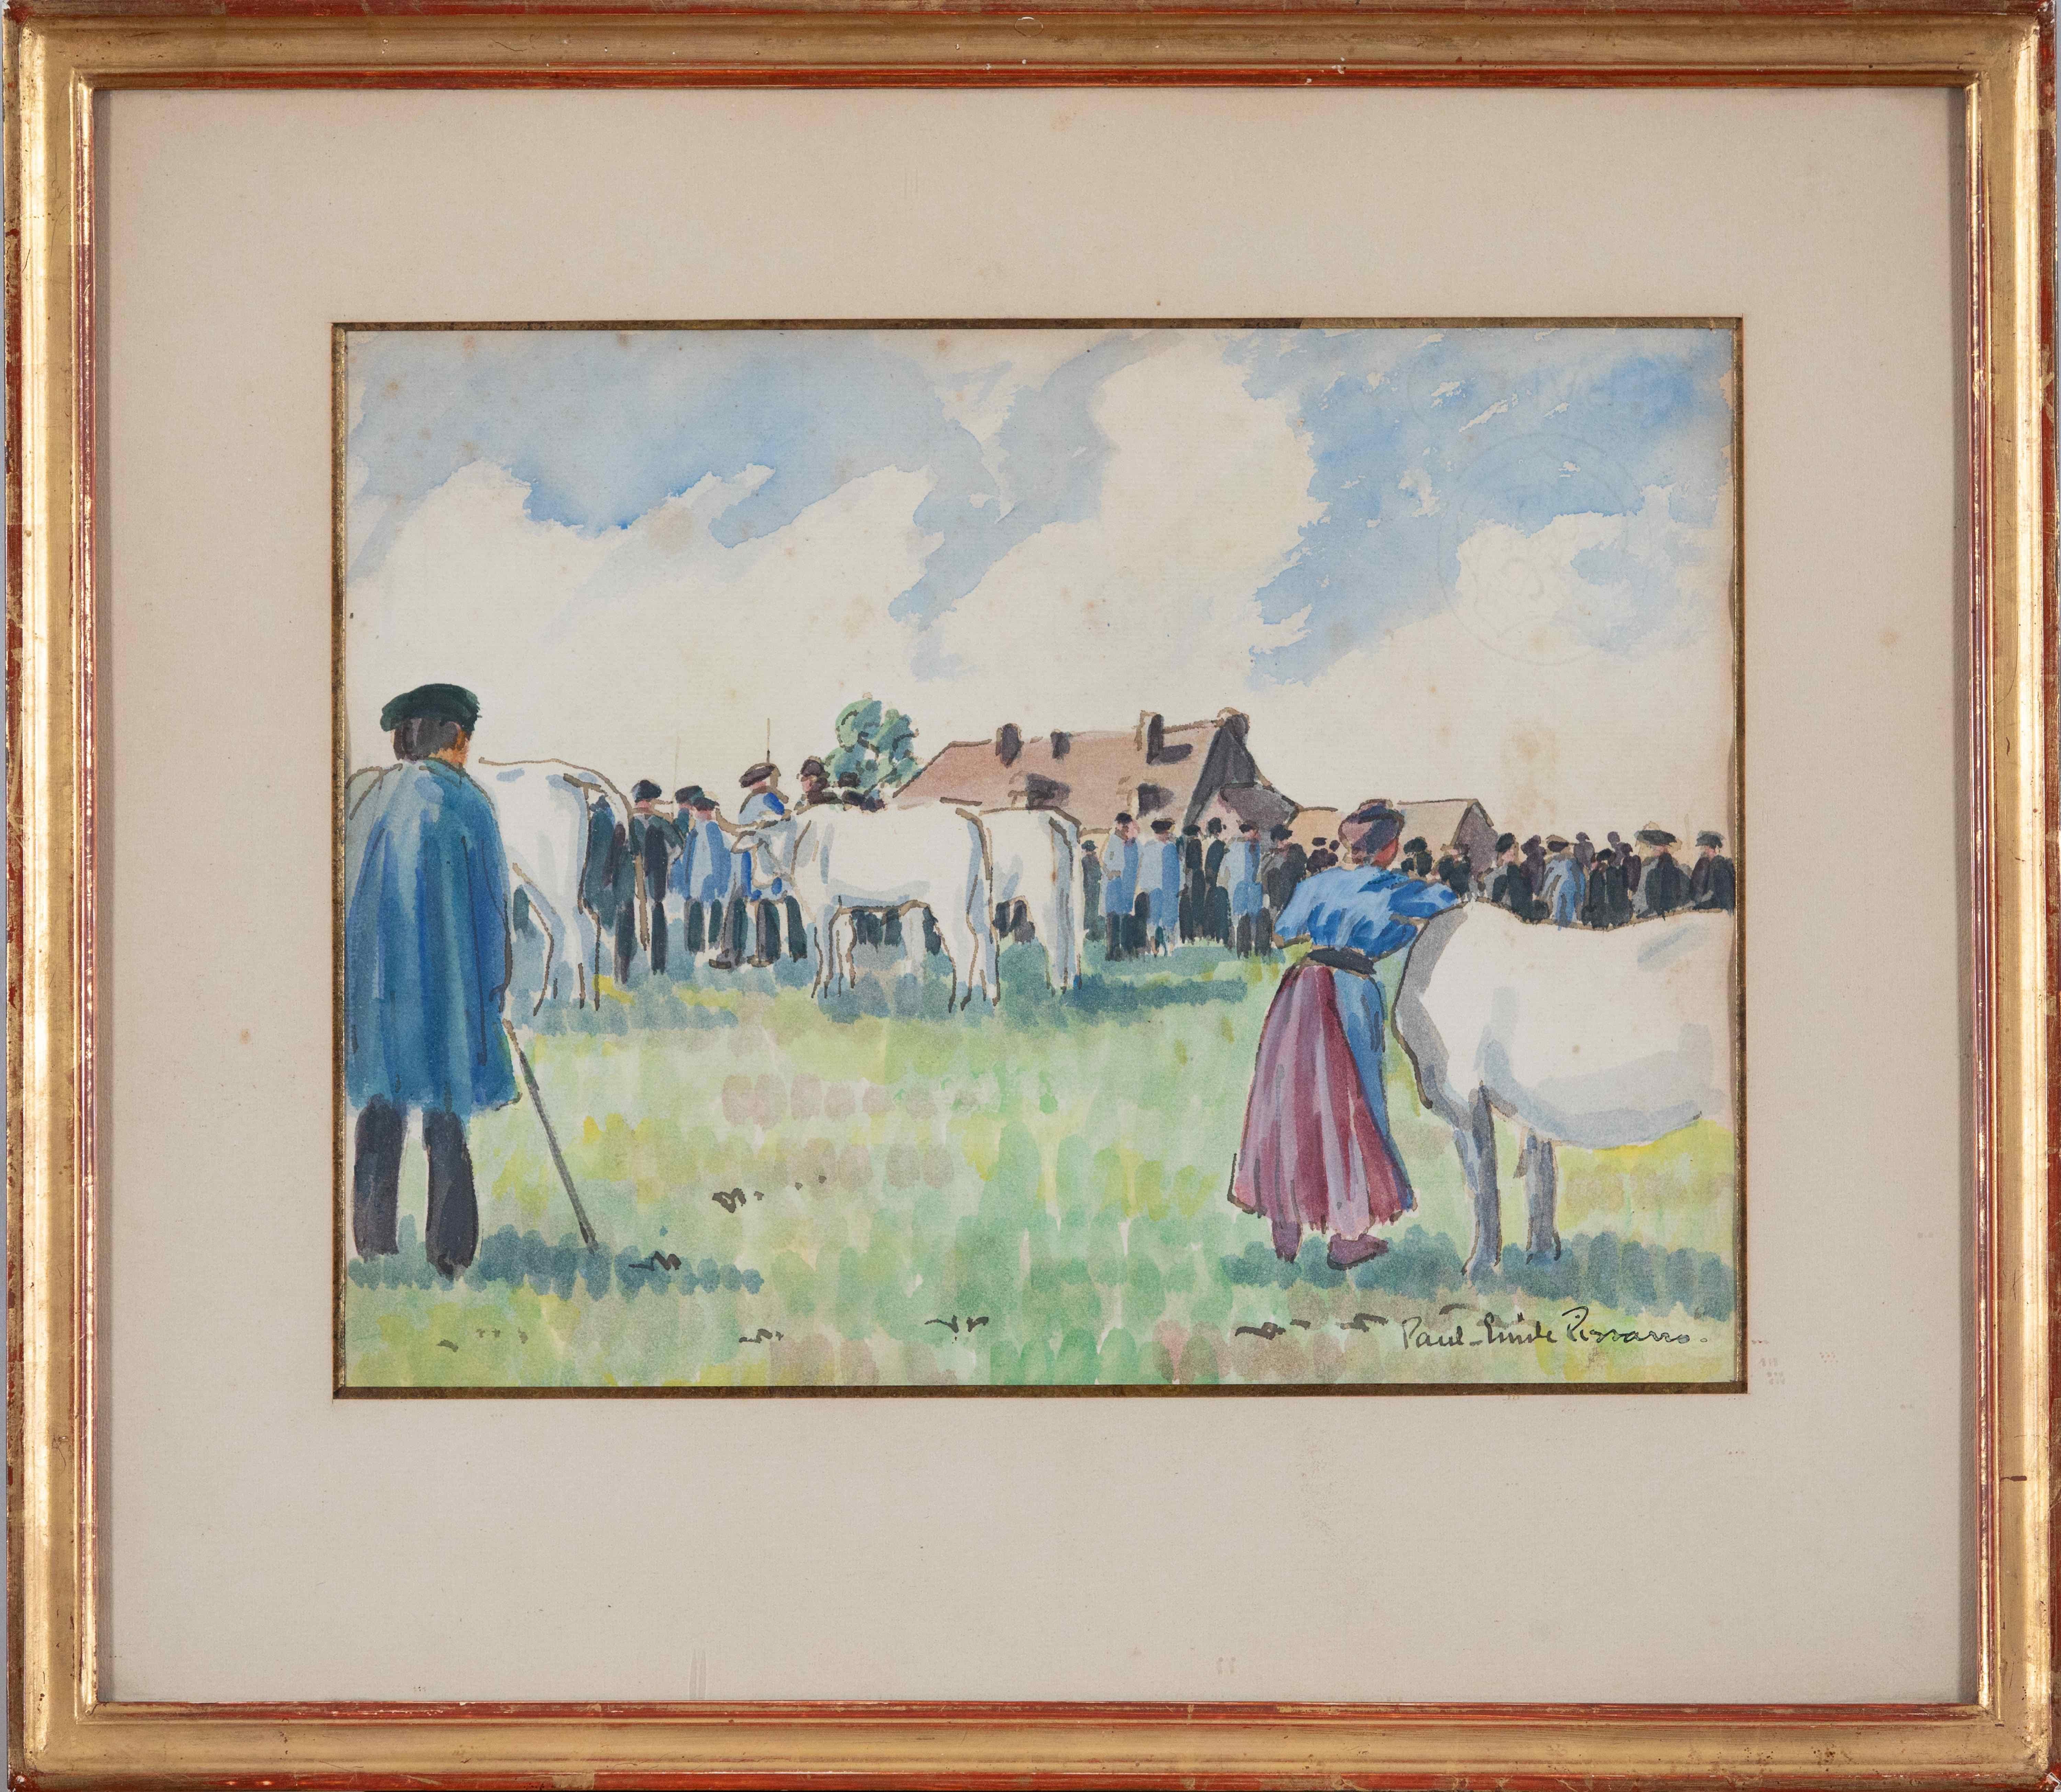 Le marché aux bestiaux by Paulémile Pissarro - Watercolour and ink on paper - Art by Paul Emile Pissarro